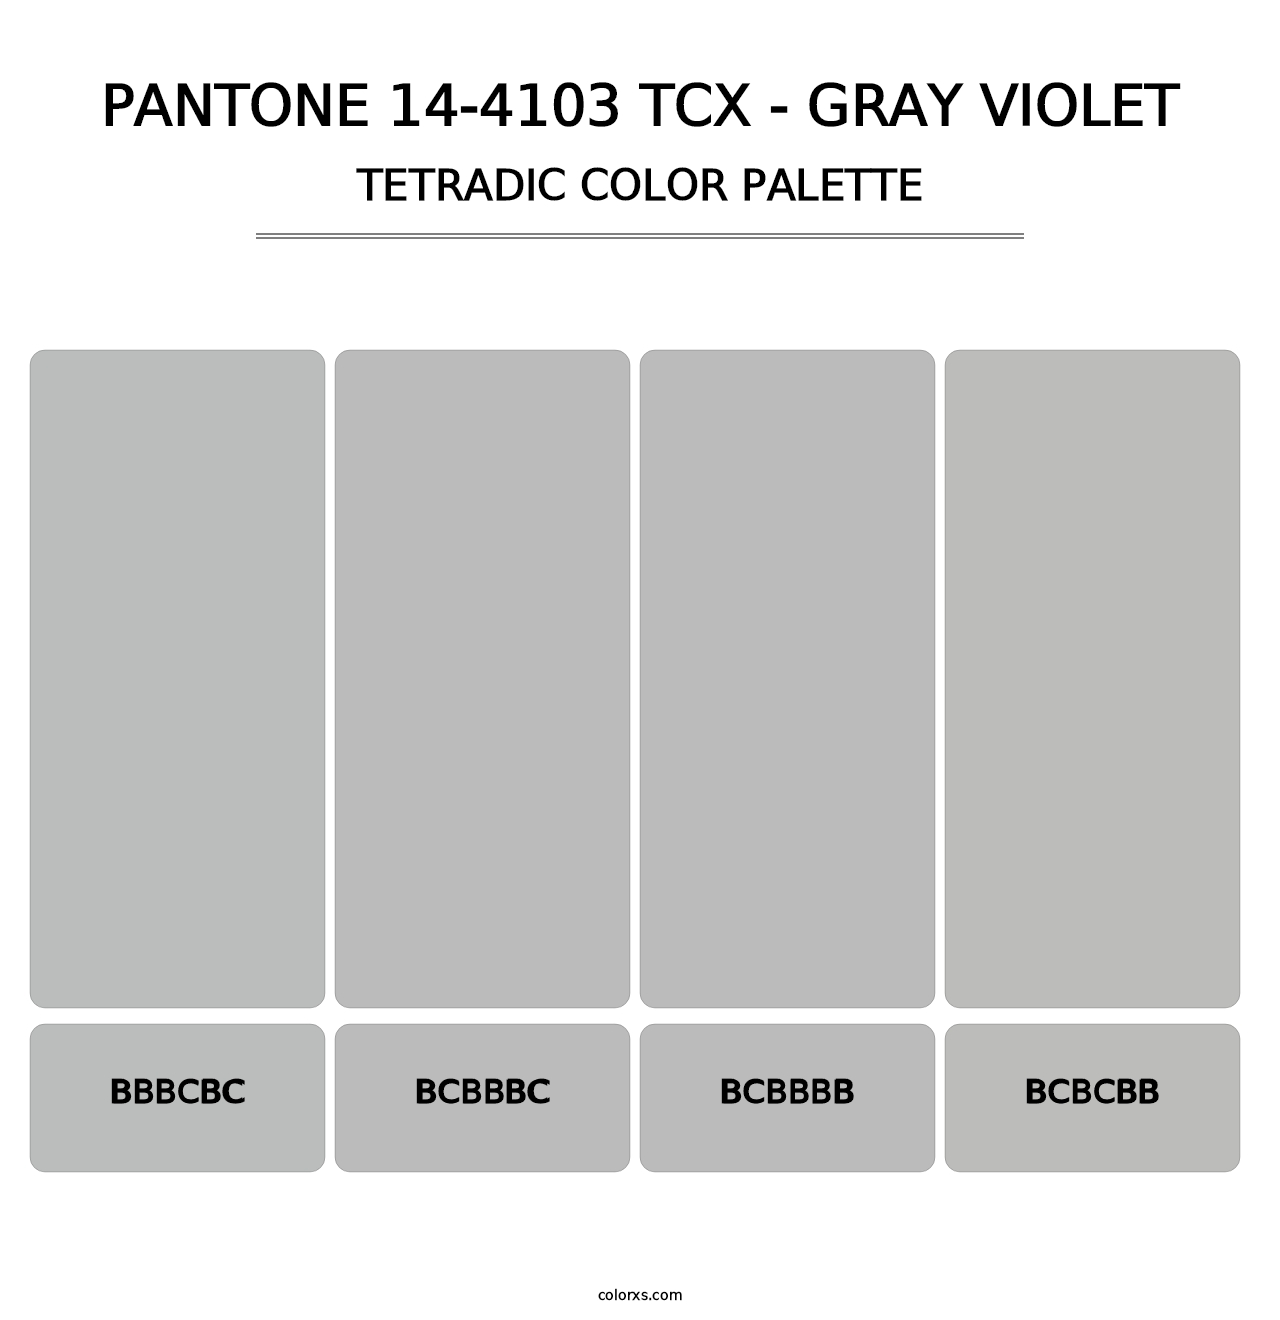 PANTONE 14-4103 TCX - Gray Violet - Tetradic Color Palette